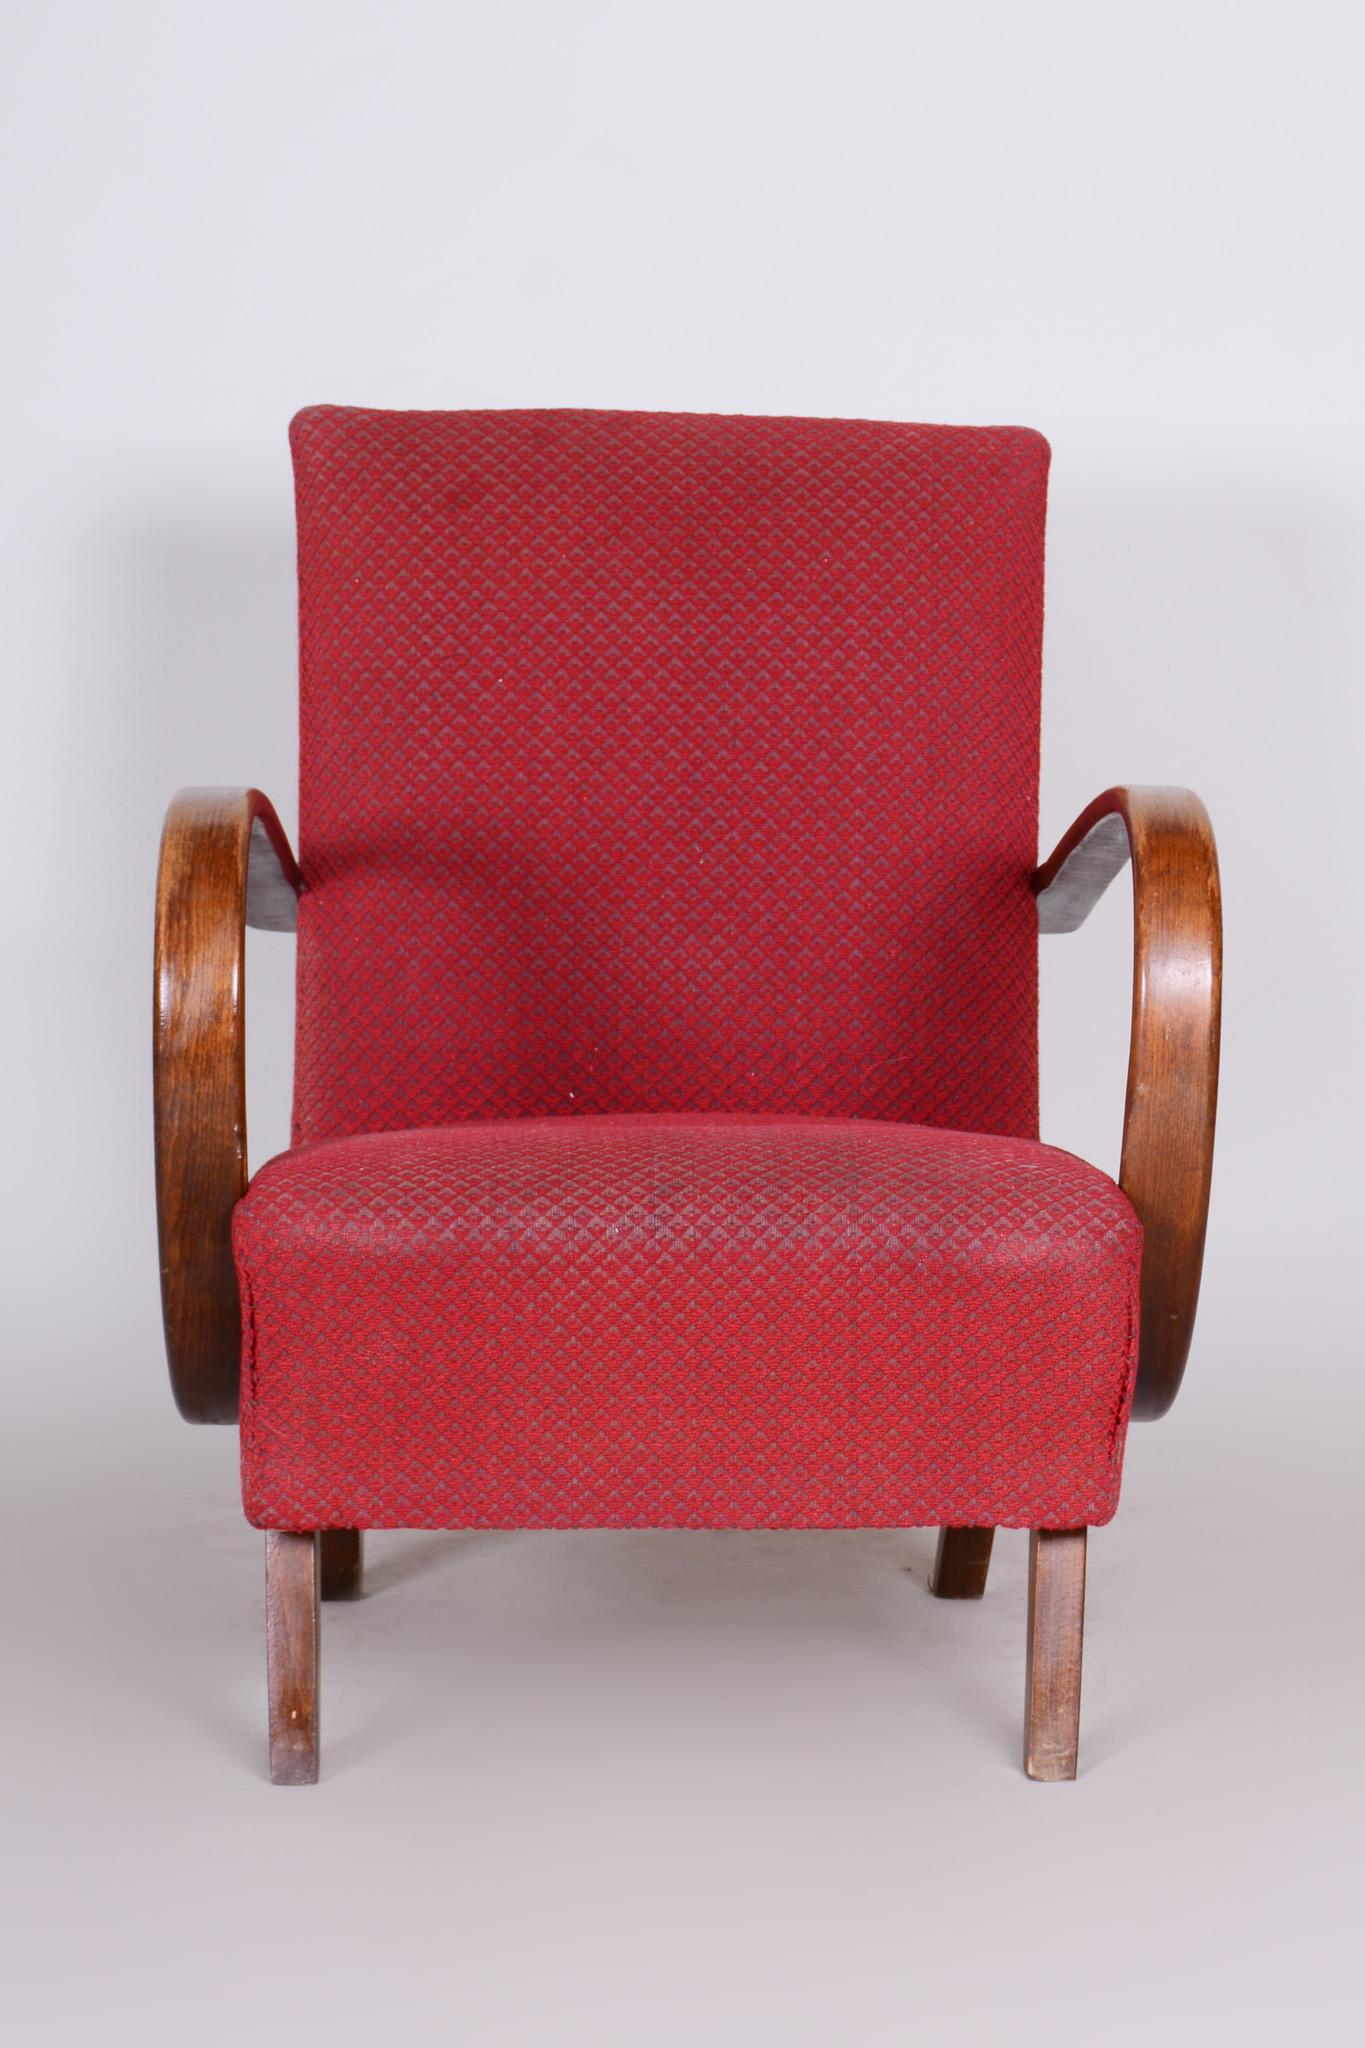 Paire de fauteuils Art Déco
Source : Tchécoslovaquie (République tchèque)
Période : 1930-1939.
Matériau : Hêtre
État original bien conservé.